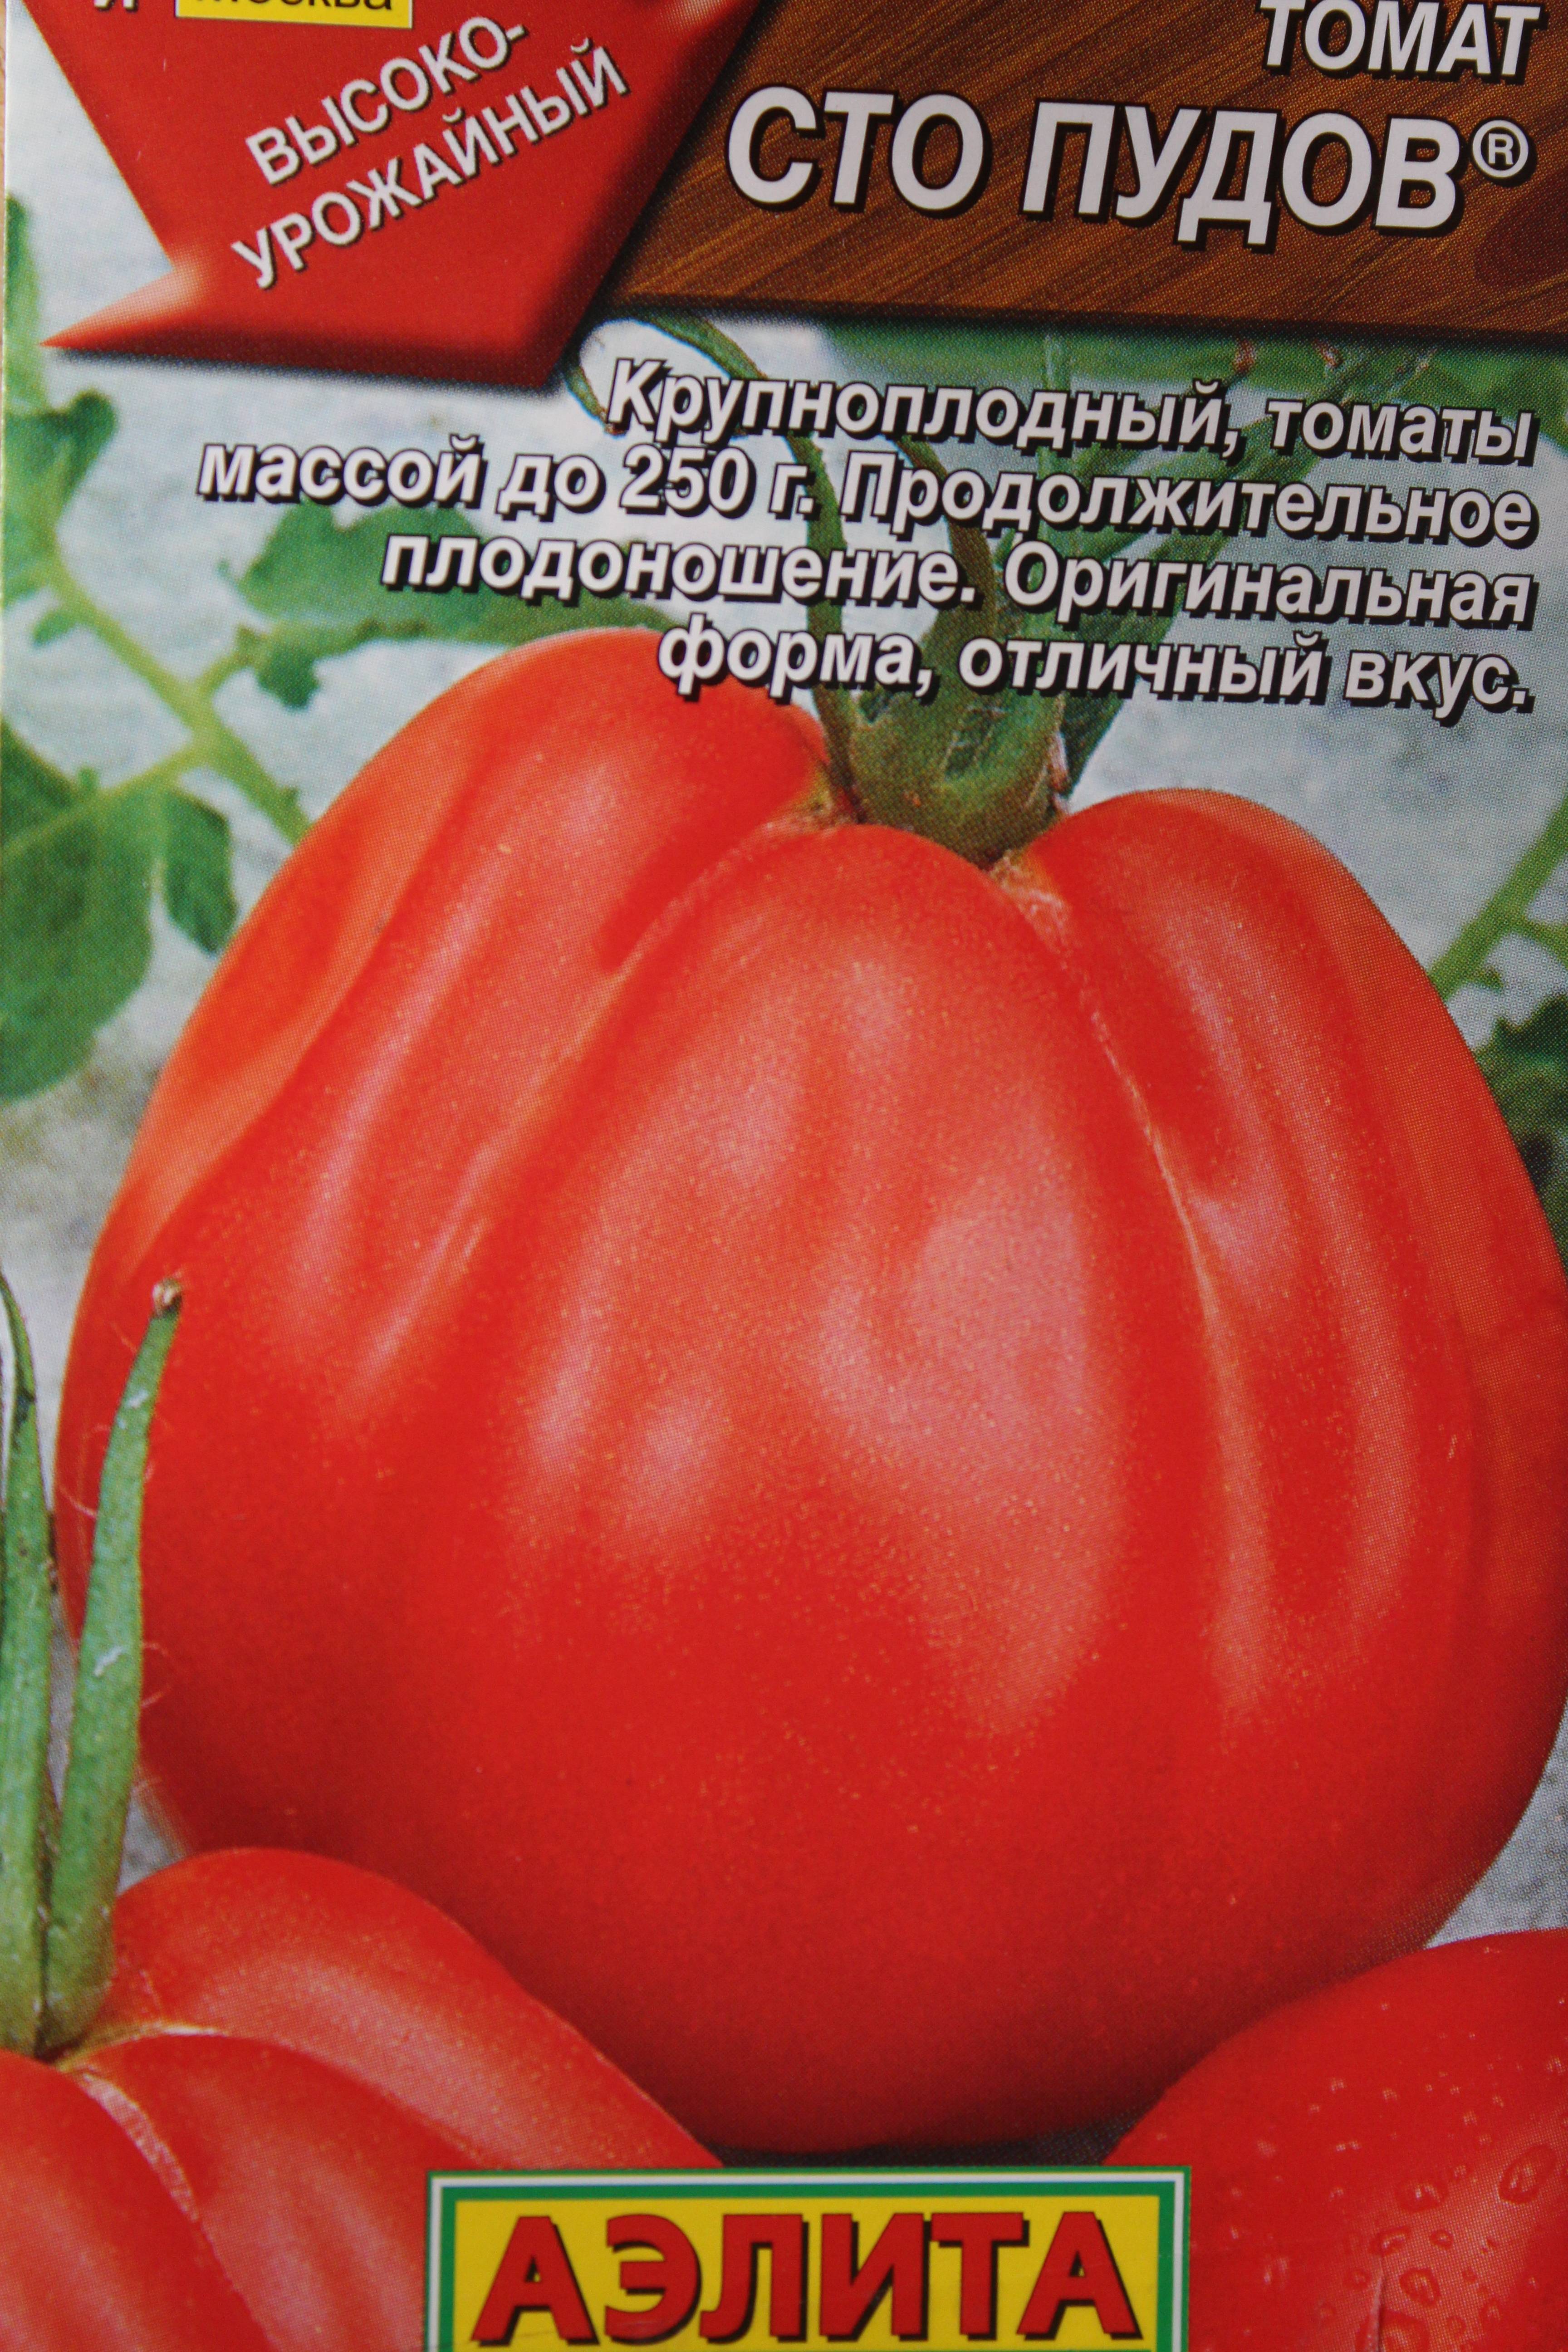 Характеристика и описание сорта томата Пузата хата, его урожайность